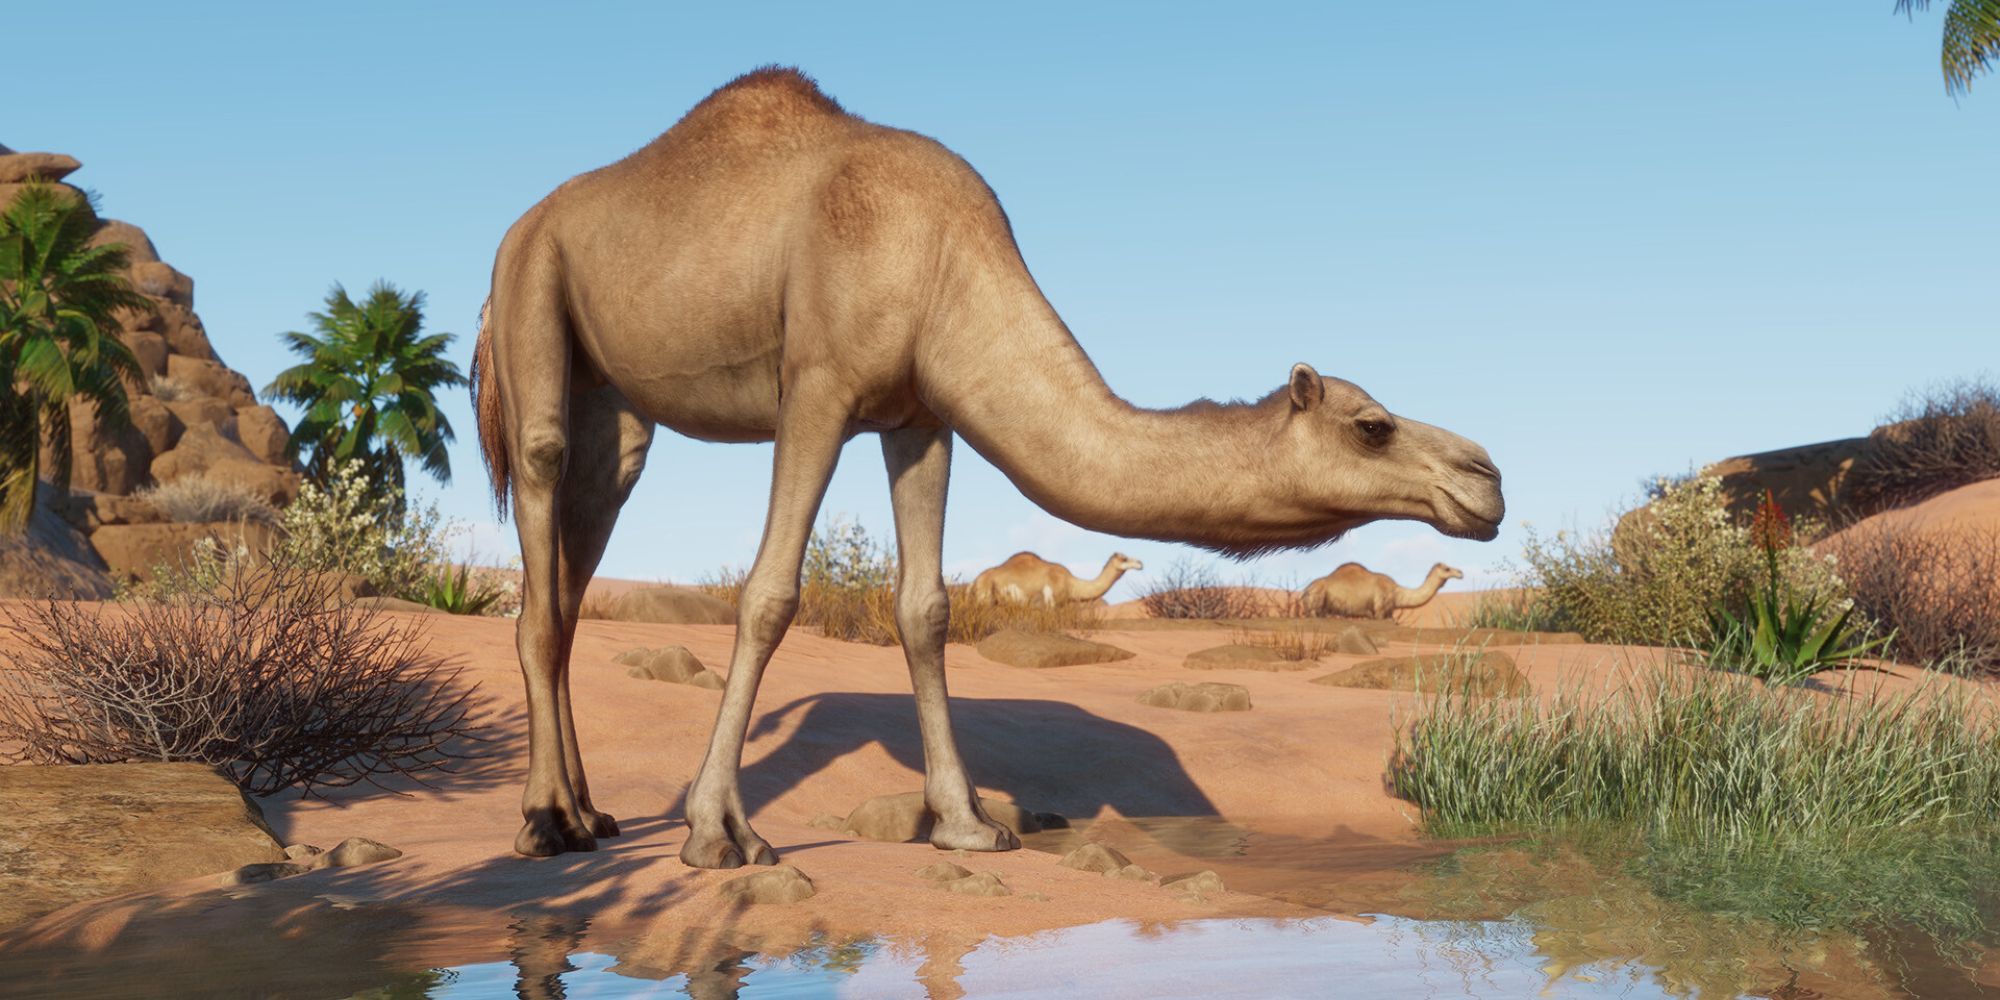 Planet Zoo Dromedary Camel